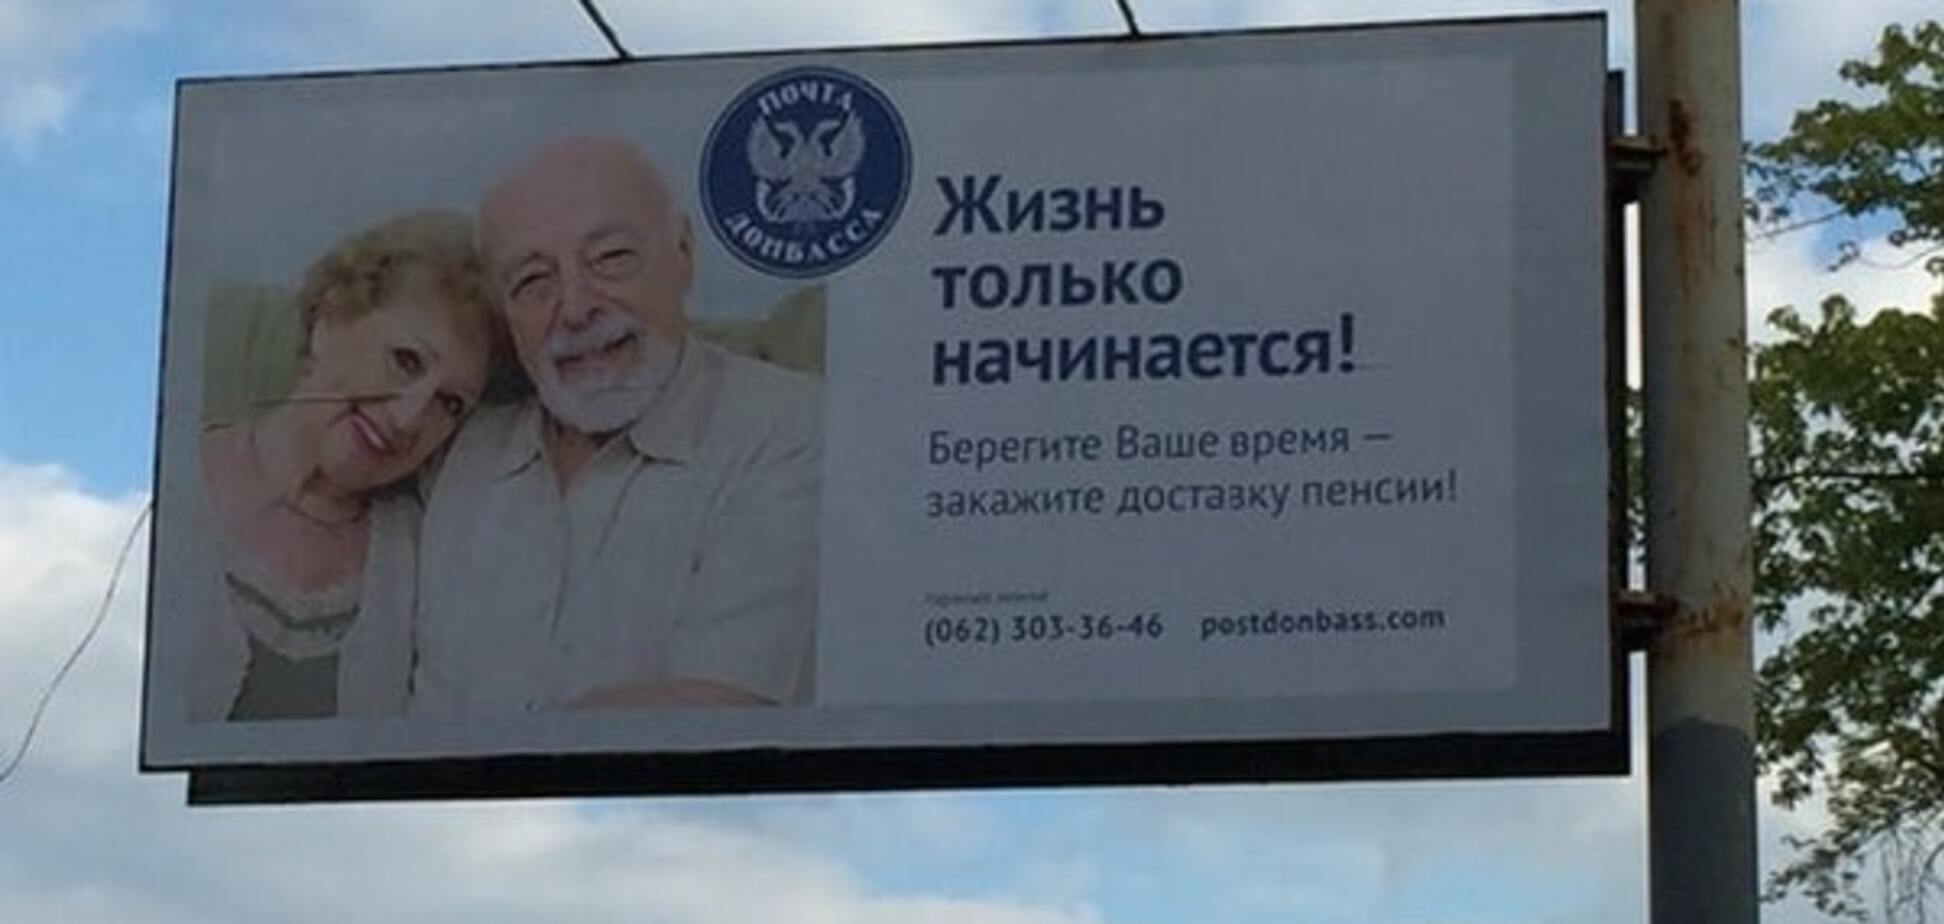 Билборд Почты Донбасса